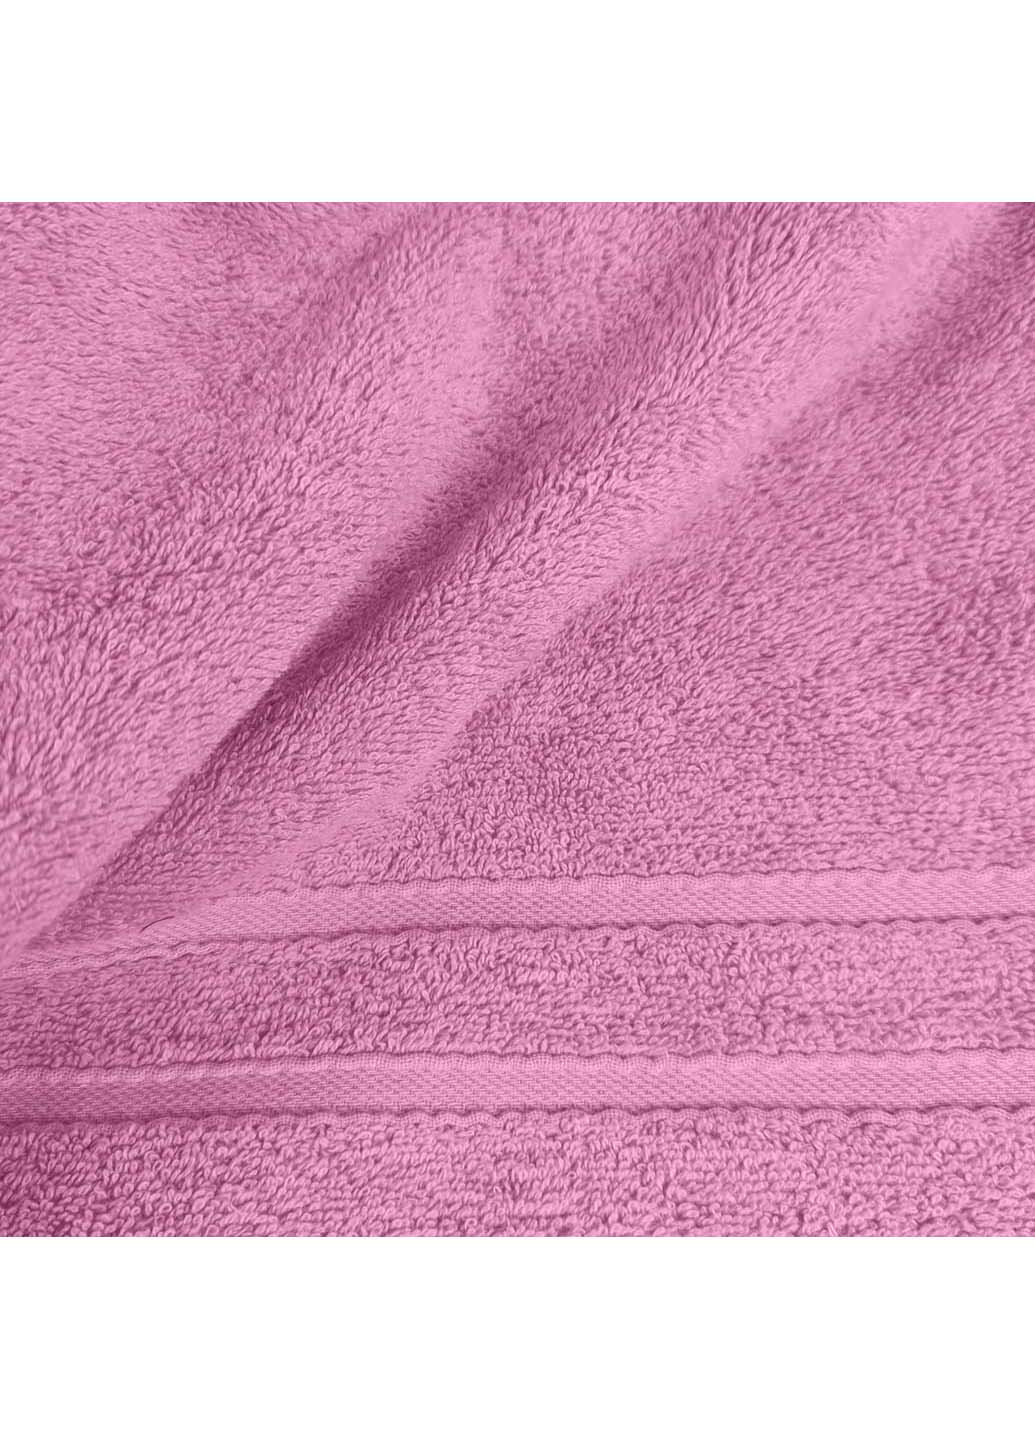 Cosas полотенца махровые candy 3 шт розовый производство -